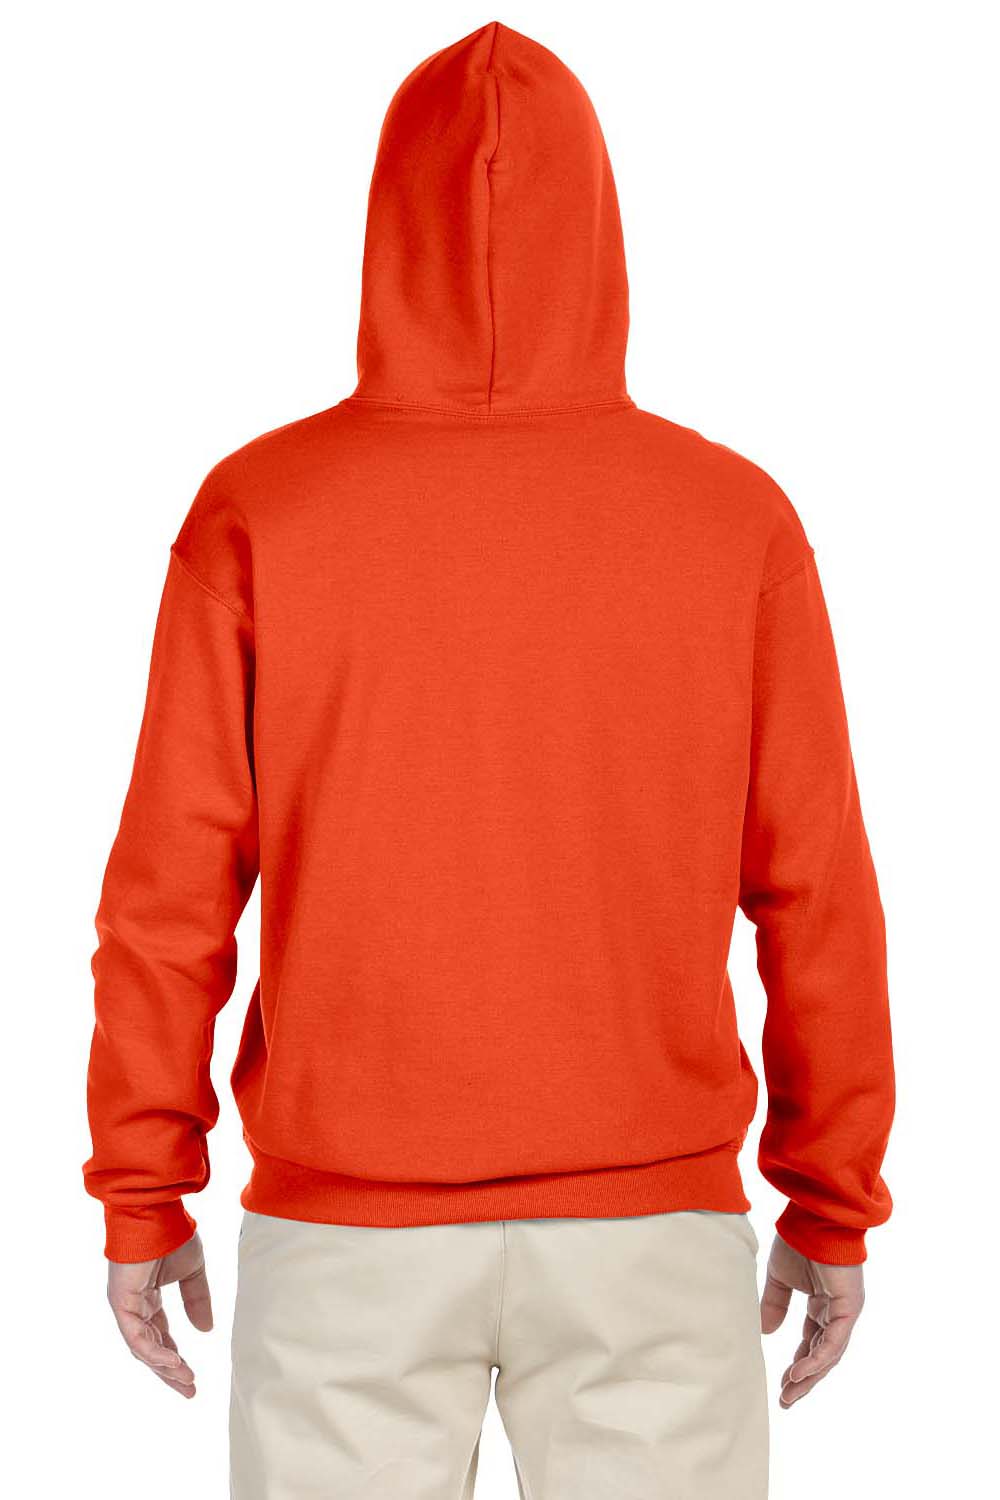 Jerzees 996 Mens NuBlend Fleece Hooded Sweatshirt Hoodie Burnt Orange Back